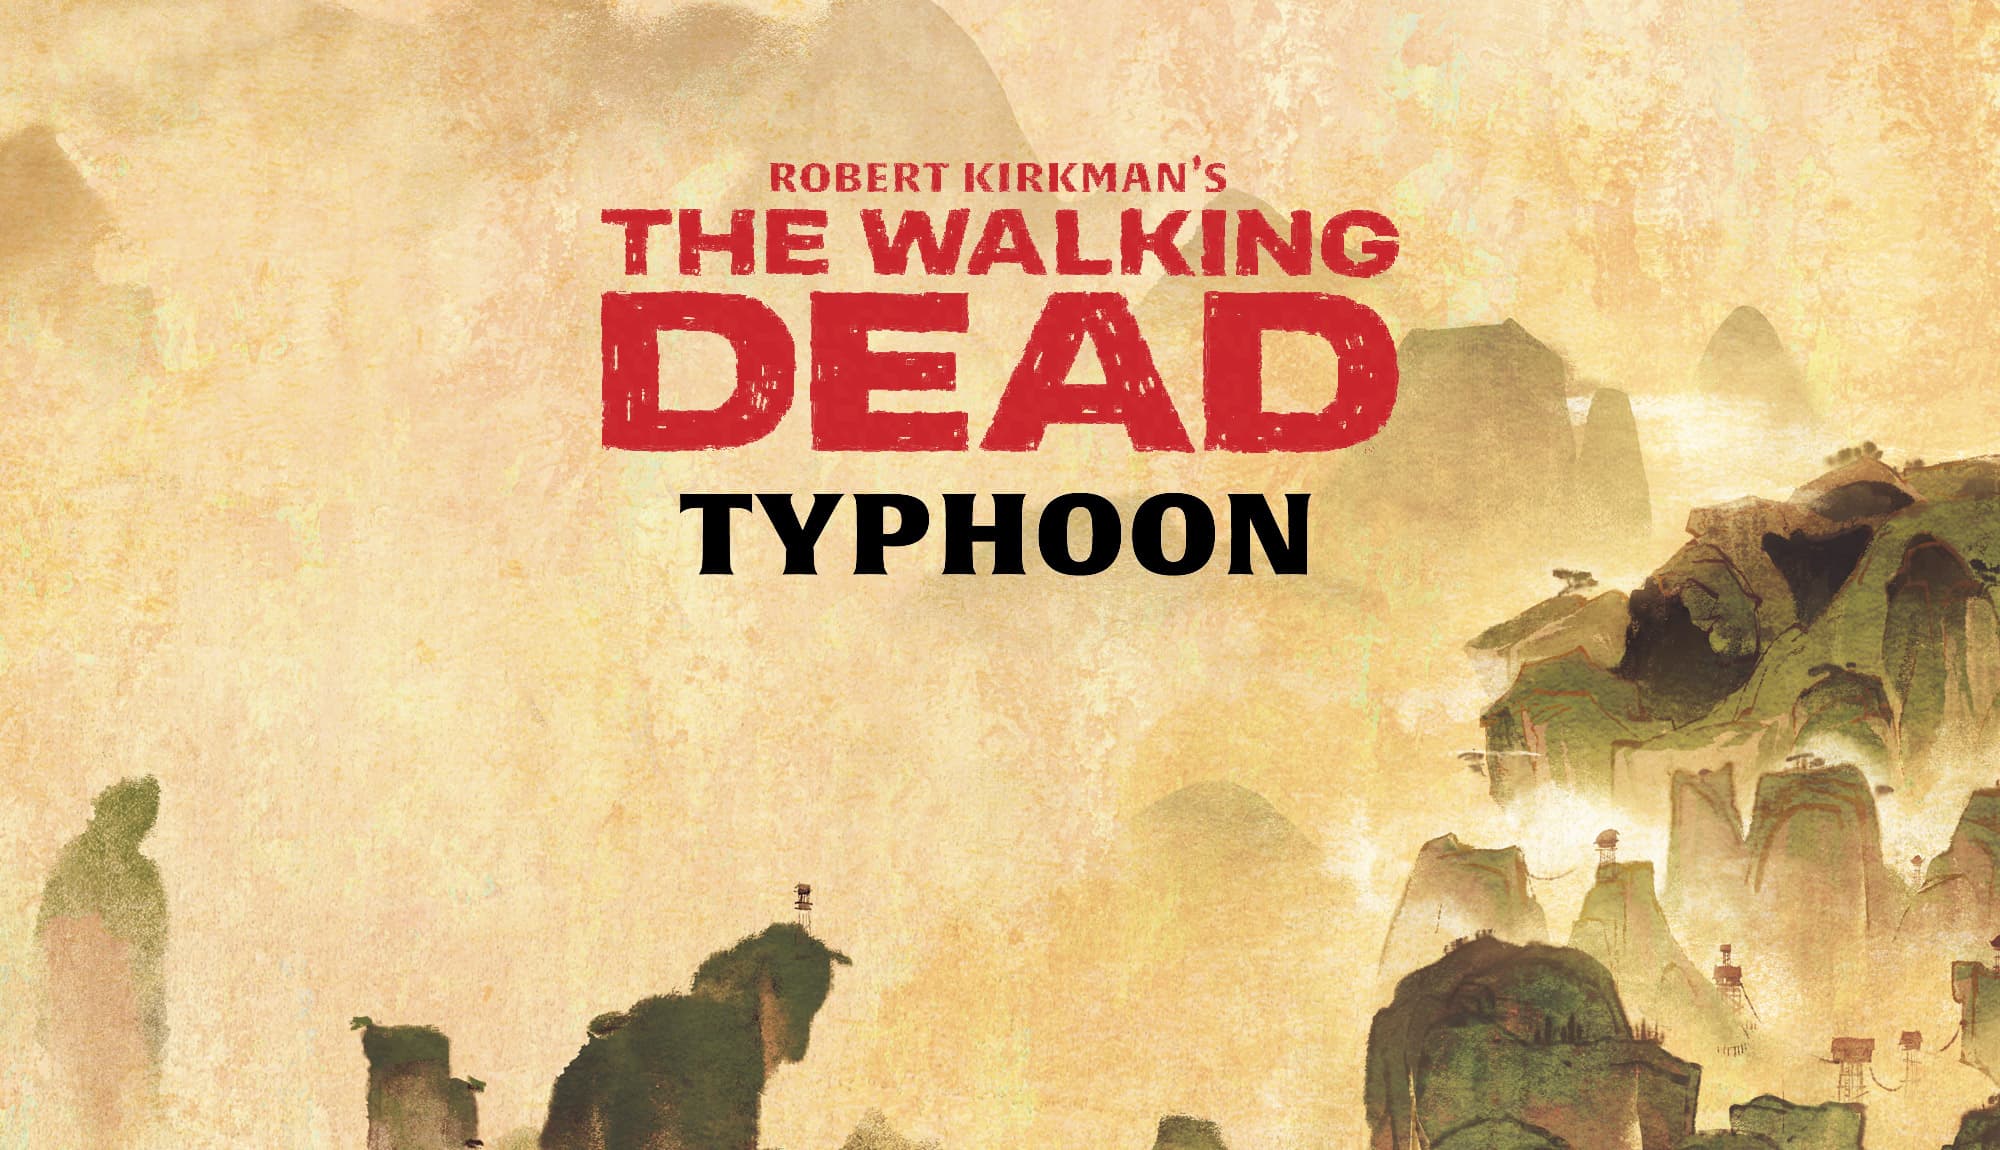 The Walking Dead: Typhoon – Wesley Chu